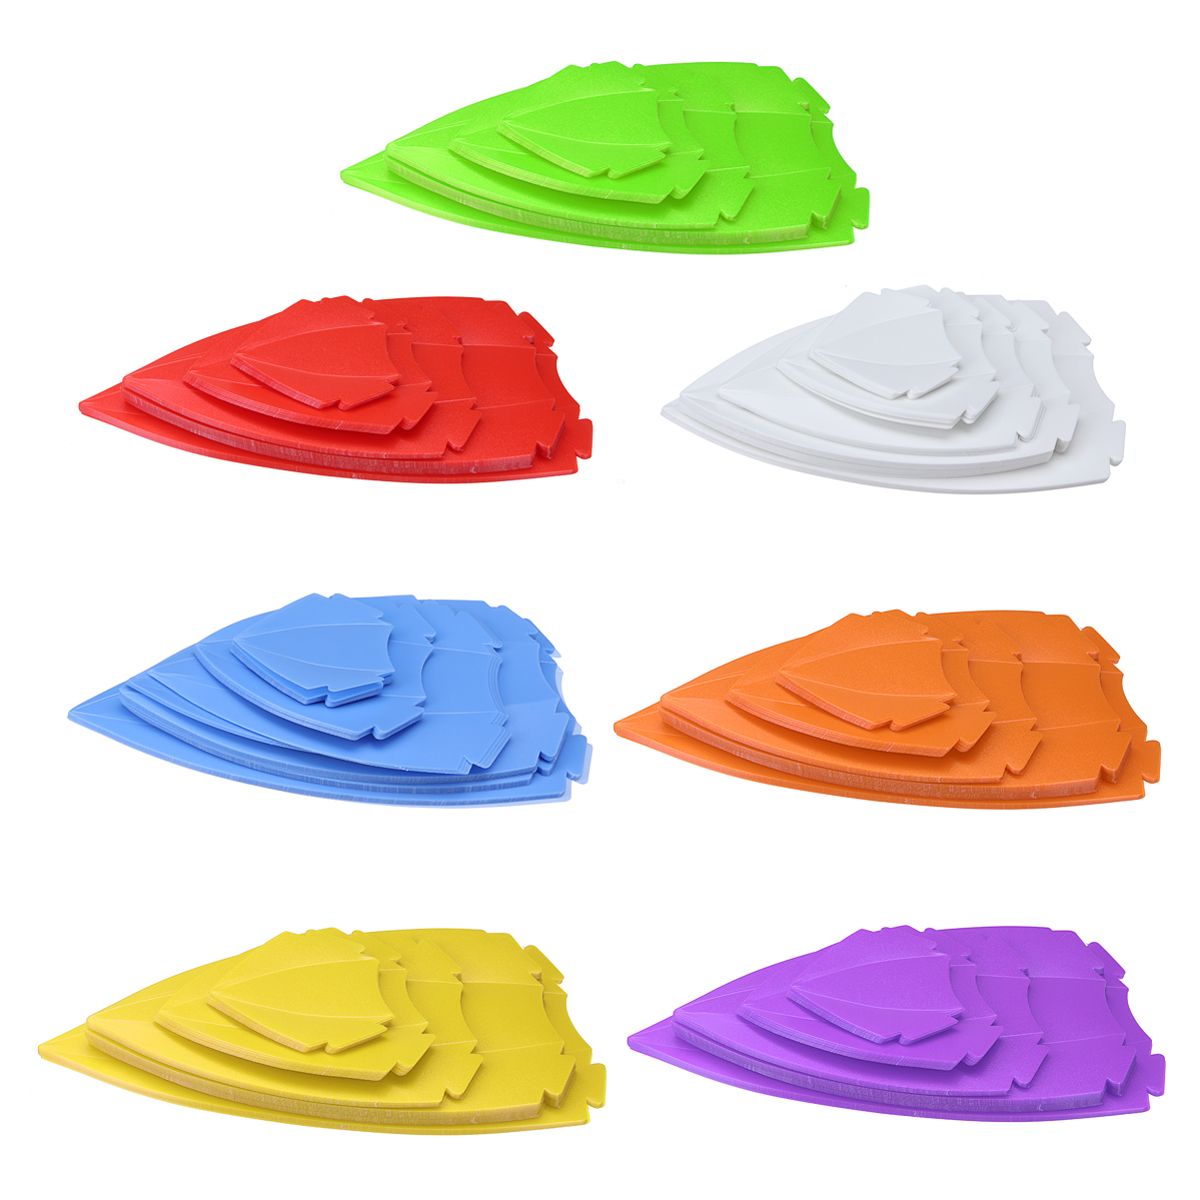 7-Colors-40CM-DIY-Lotus-Chandelier-Shape-Ceiling-Pendant-Light-Lampshade-Home-Decor-1381906